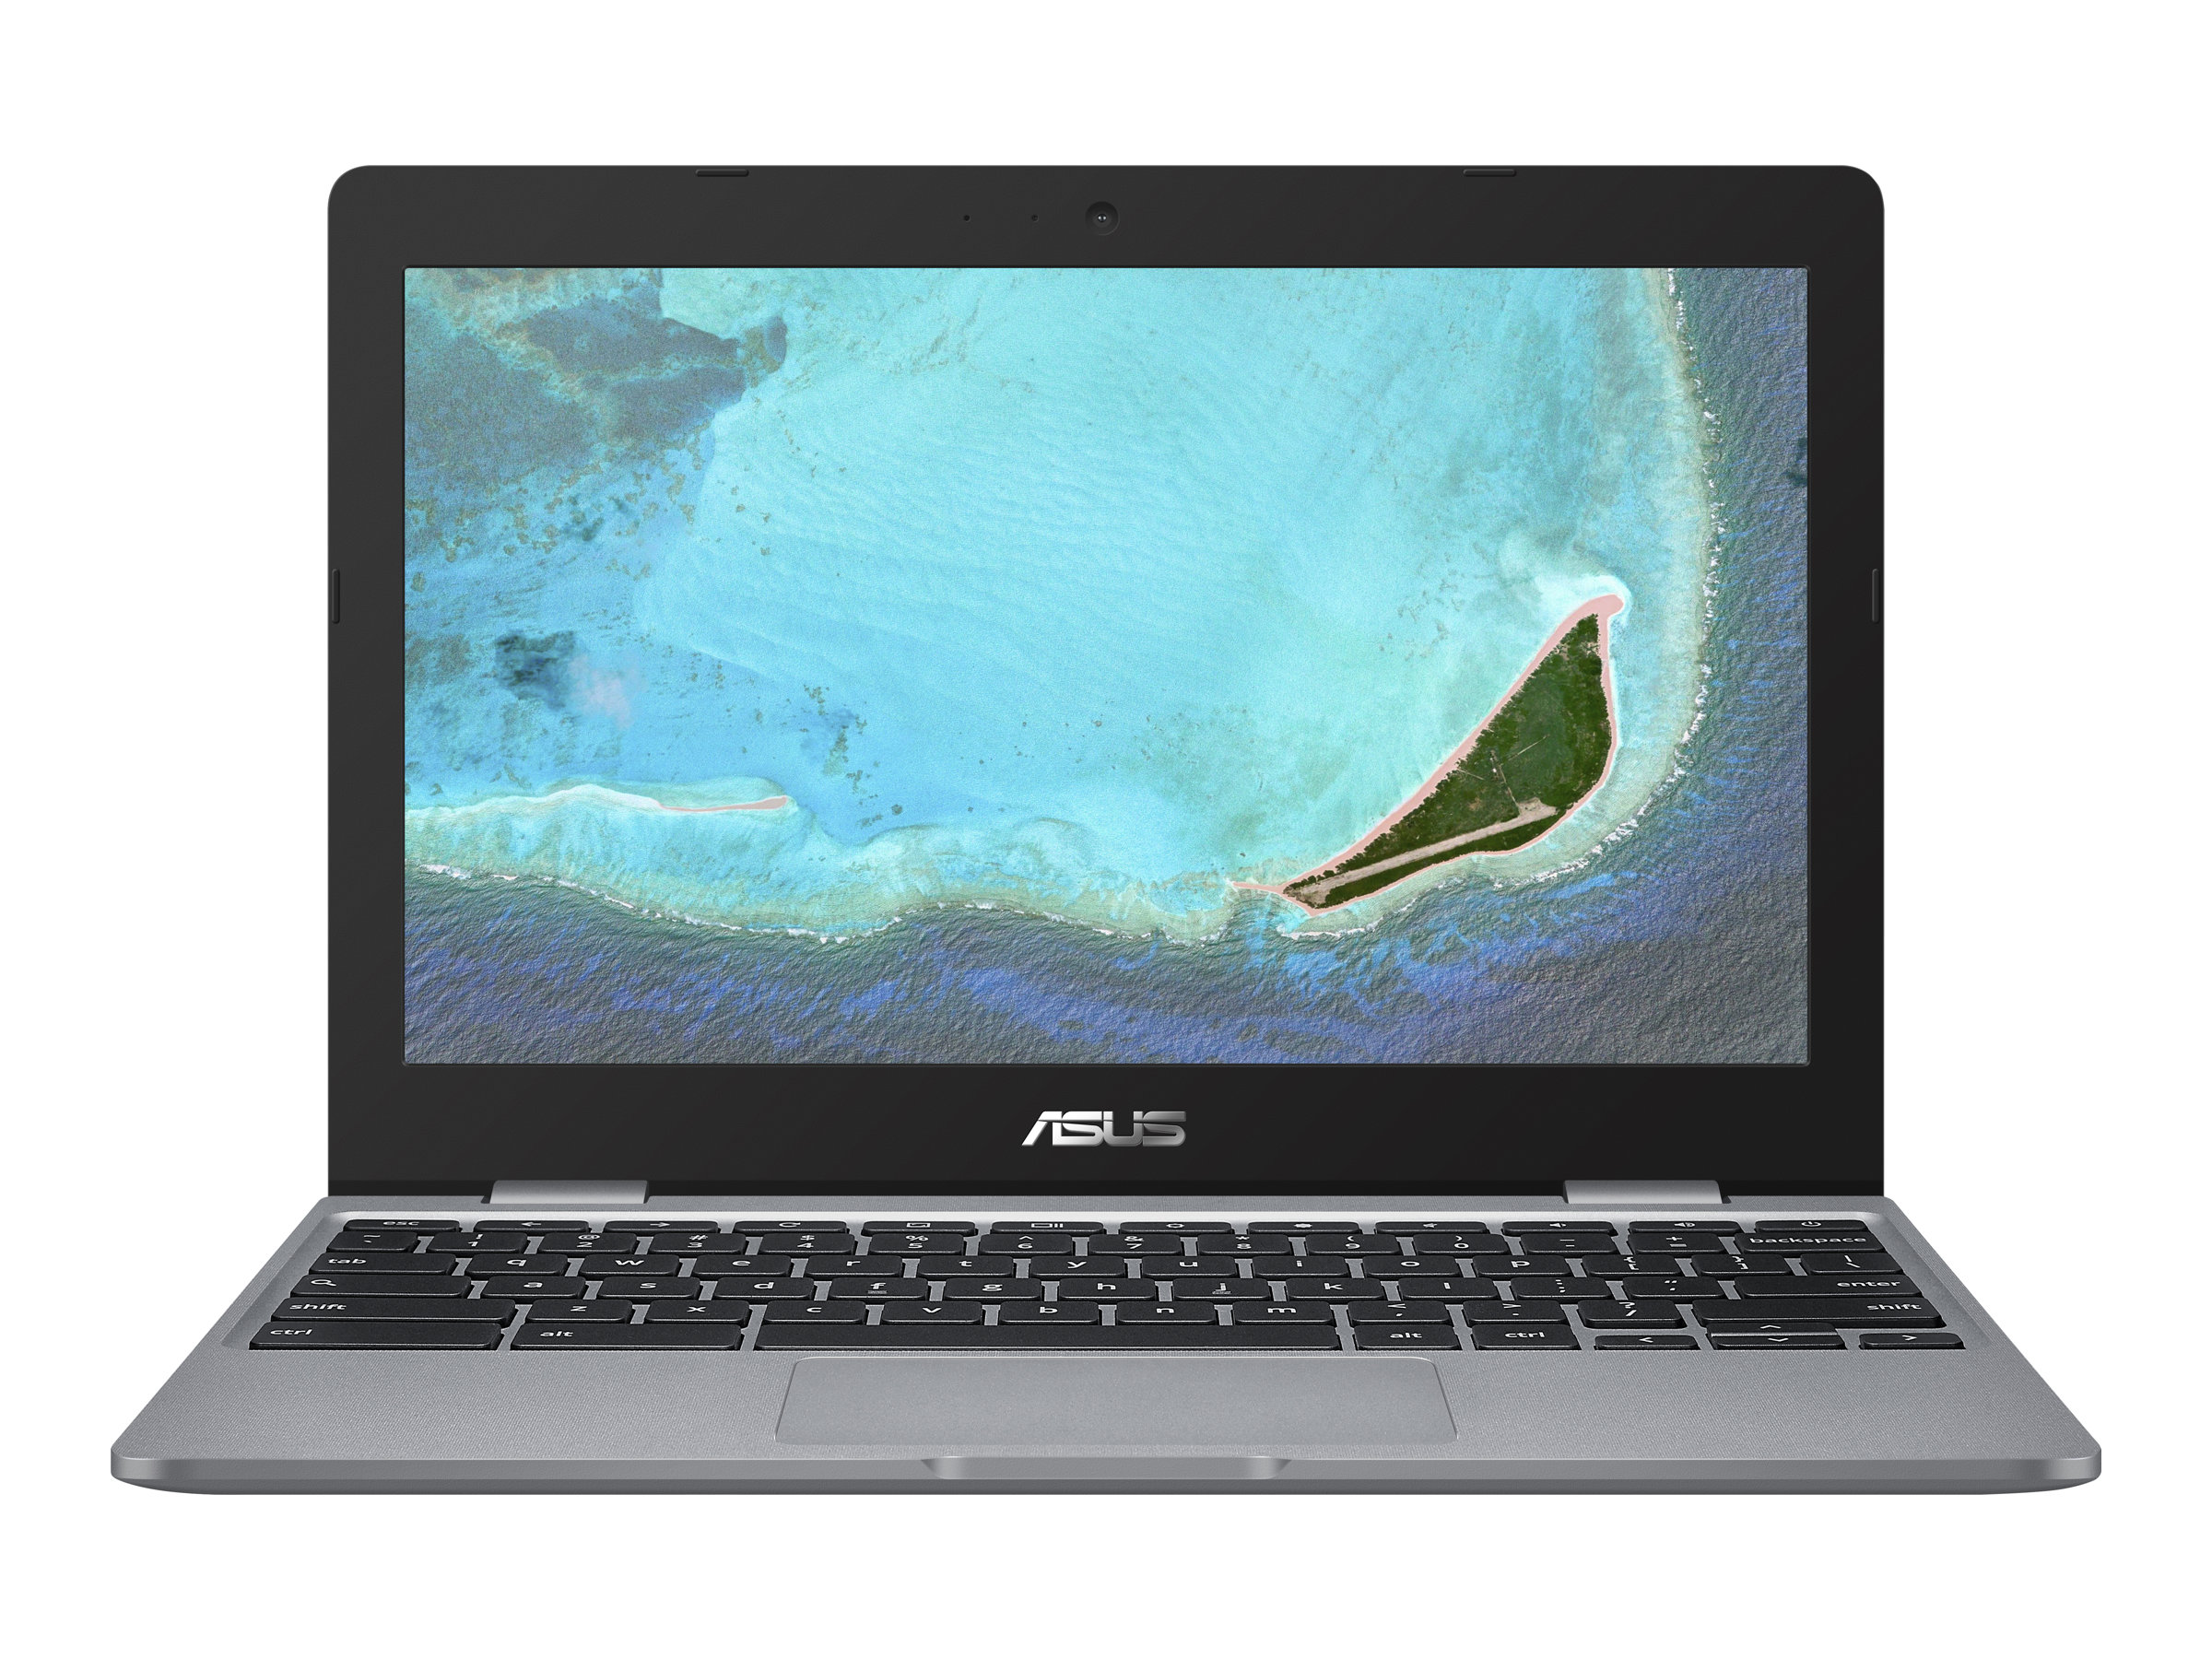 ASUS Chromebook 12 (C223NA)